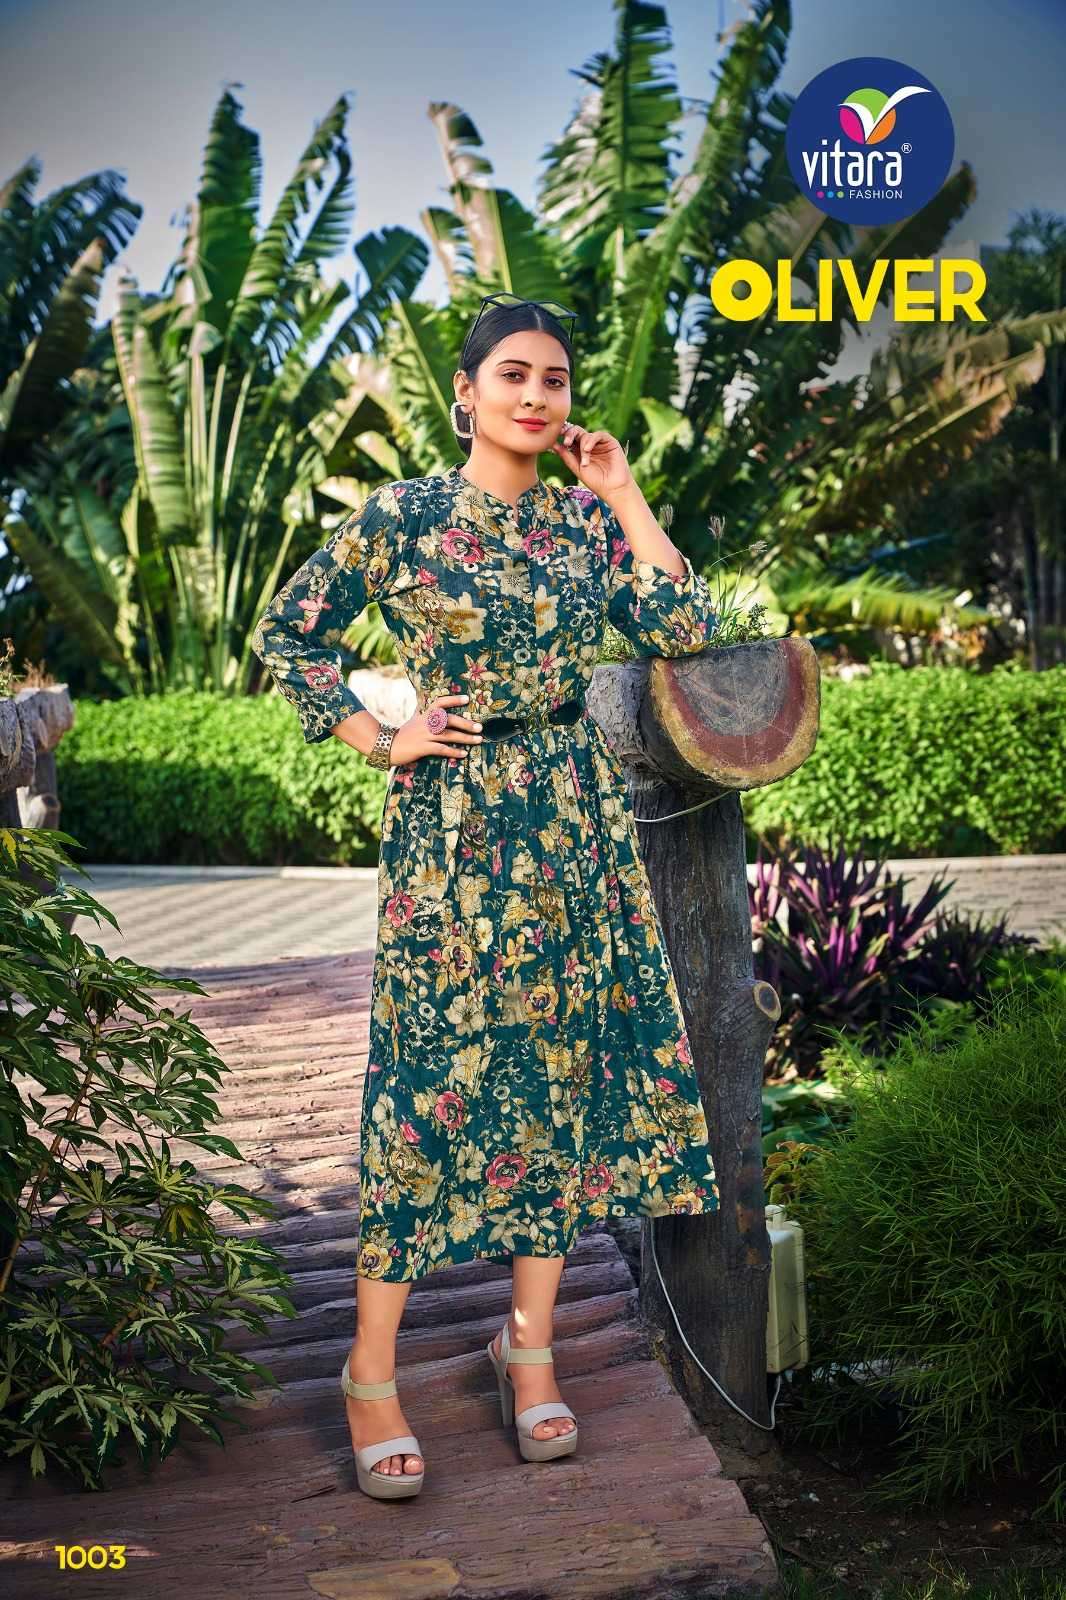 vitara fashion oliver series 1001-1003 reyon rinkle prints kurti